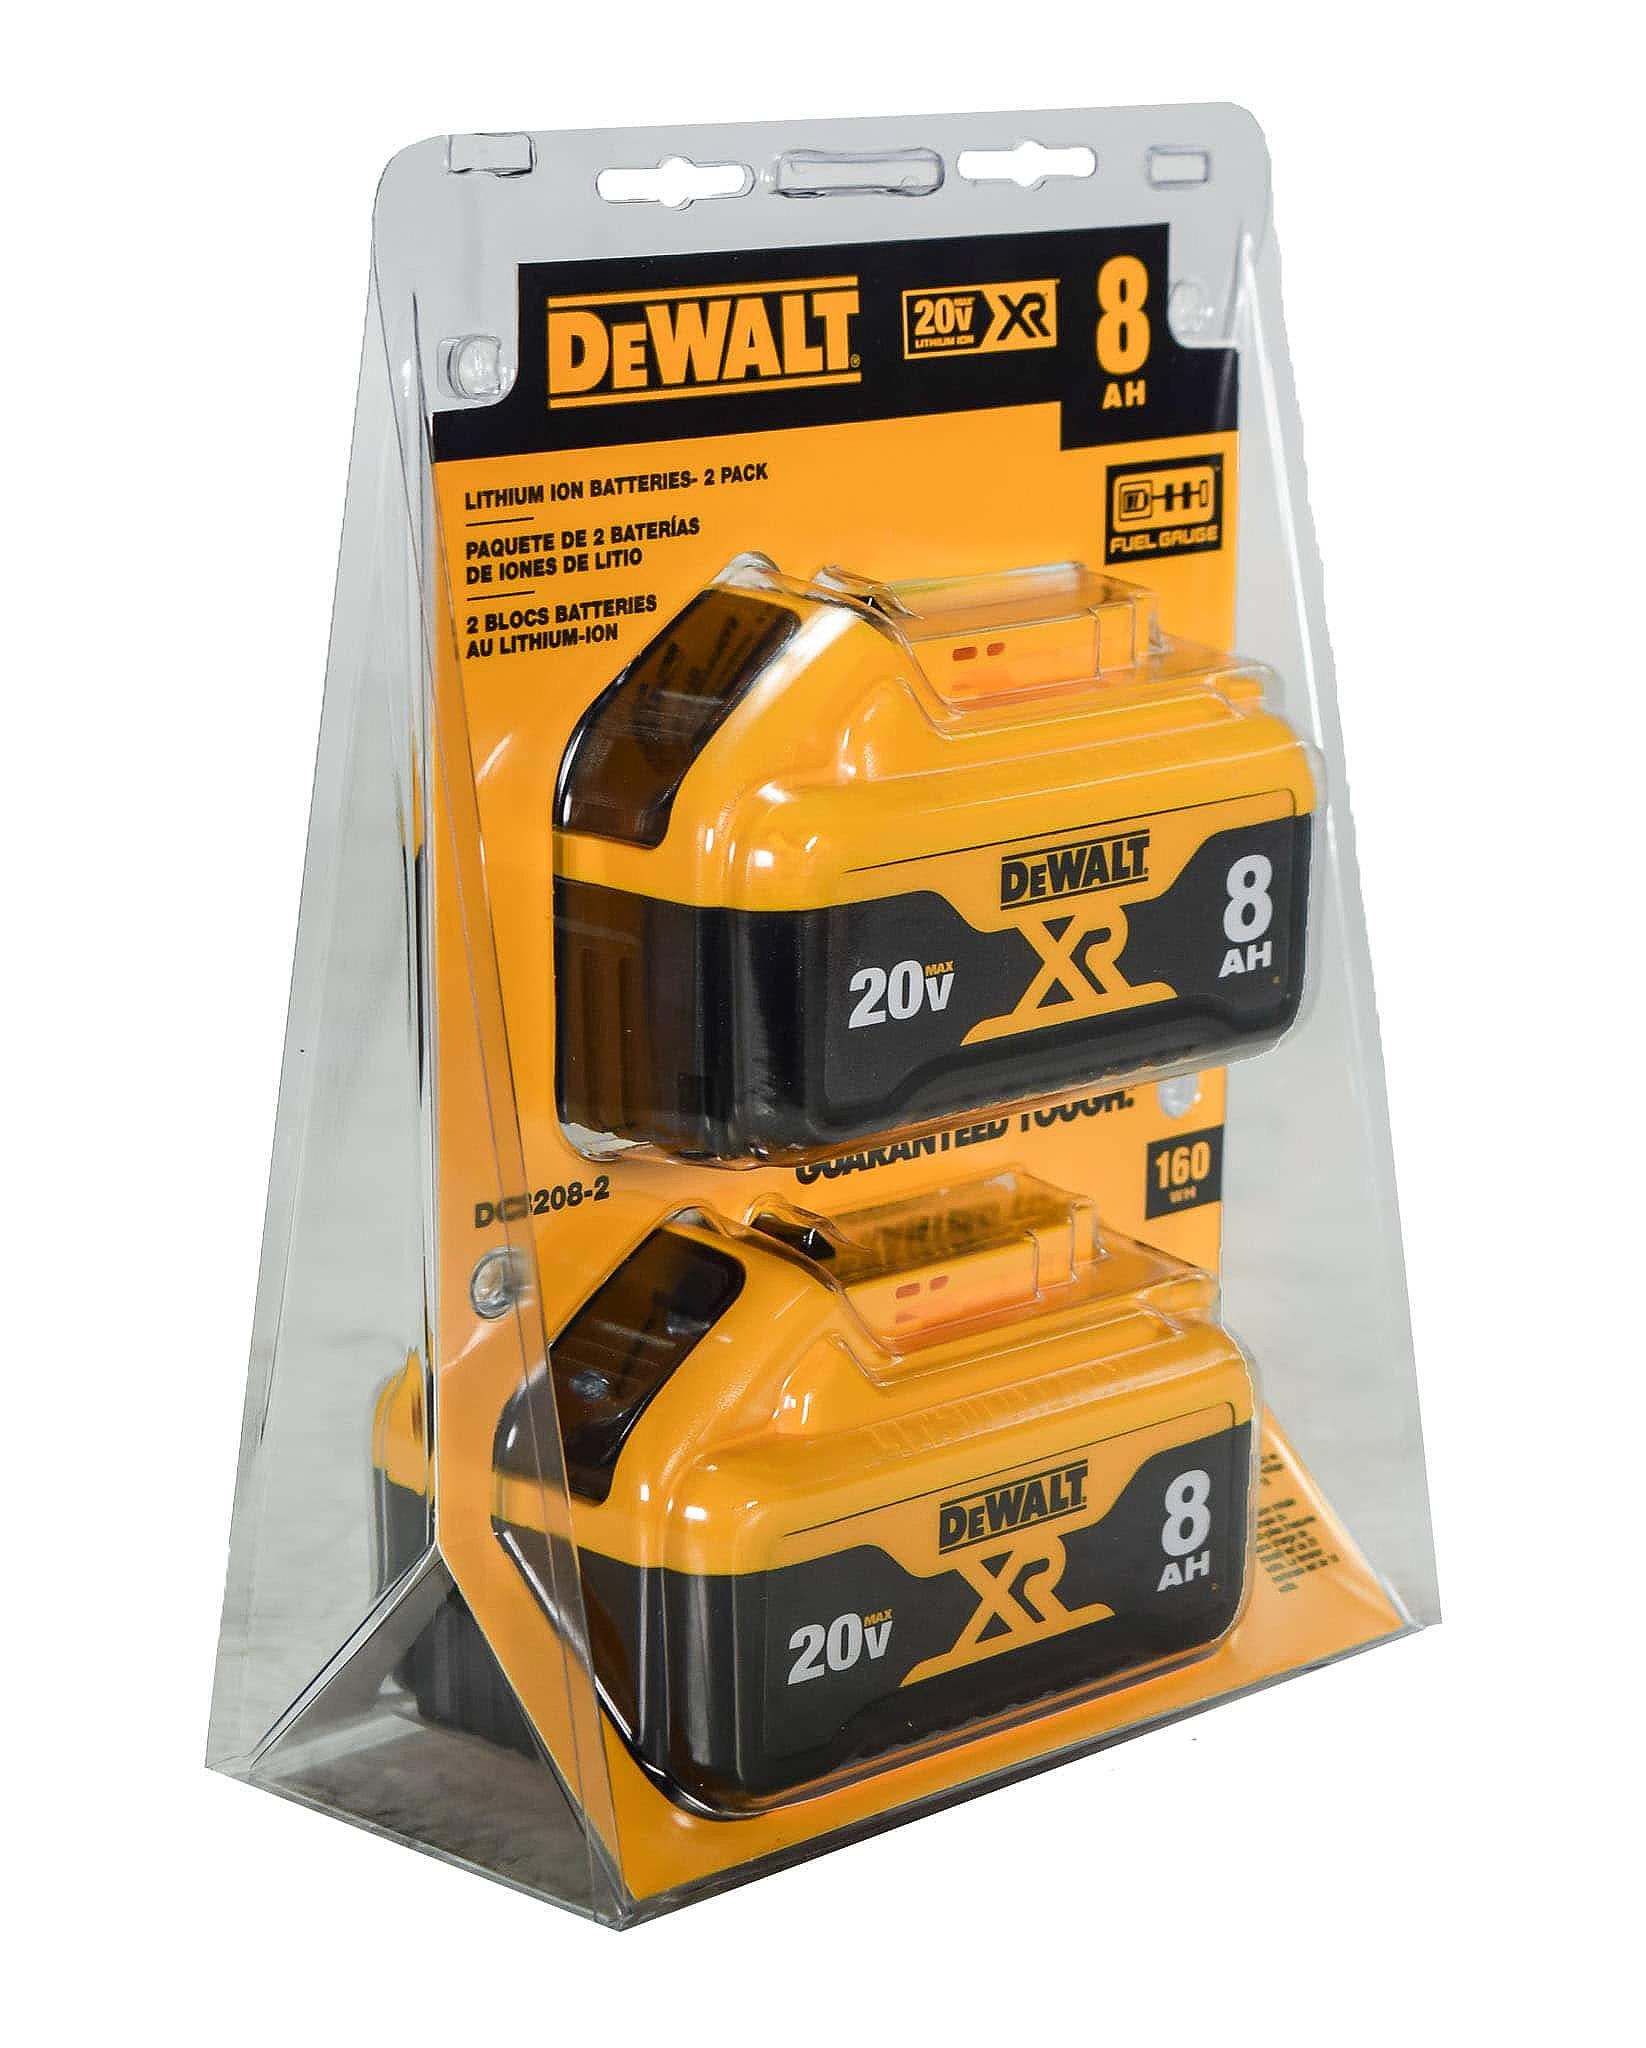 Dewalt-DCB208-2 20V MAX* XR 8Ah Battery-2 Pack - image 2 of 4